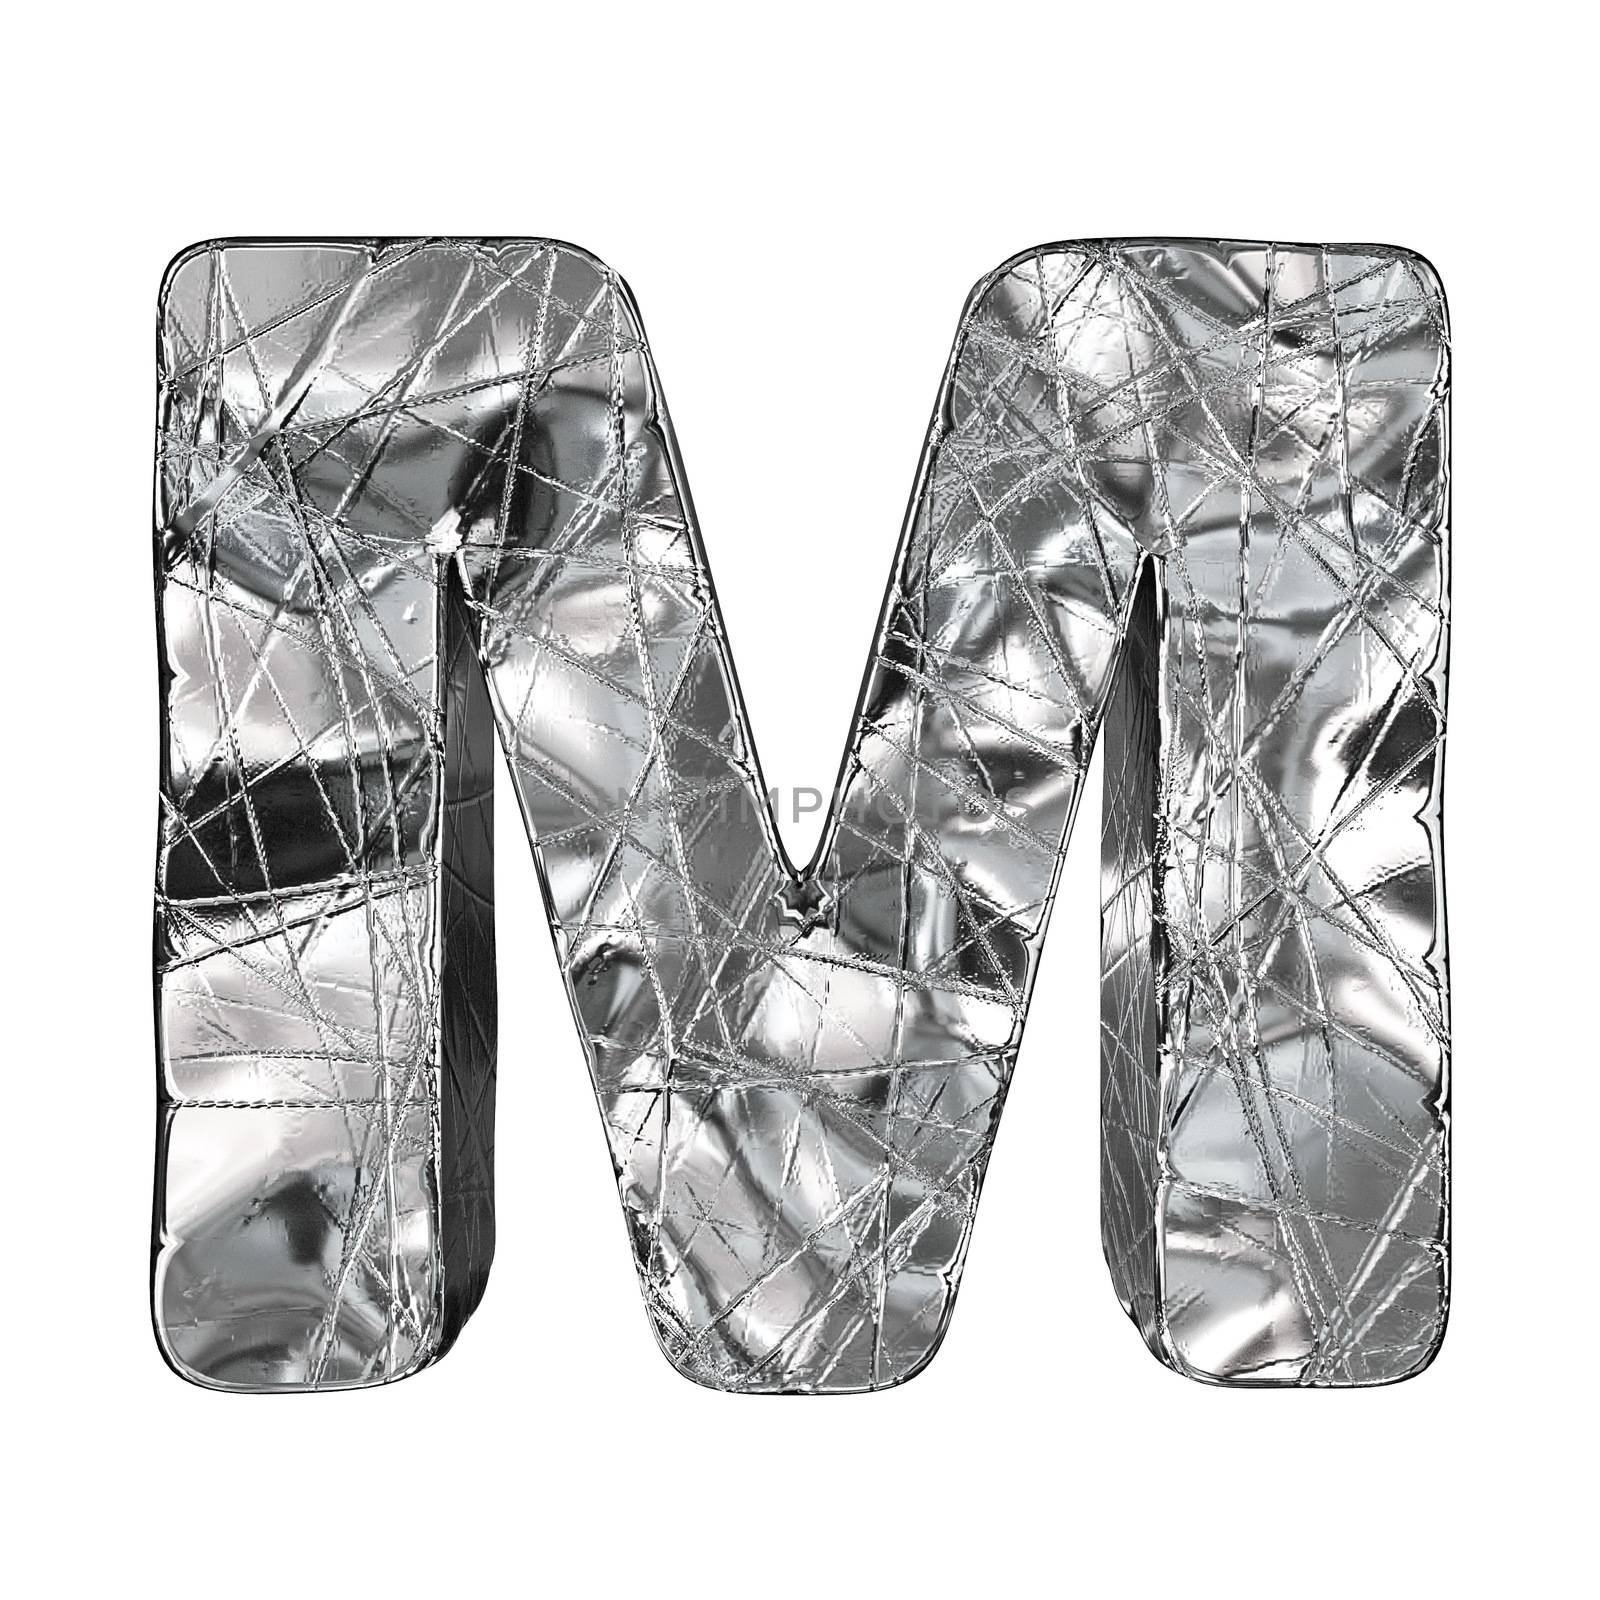 Grunge aluminium foil font letter M 3D render illustration isolated on white background